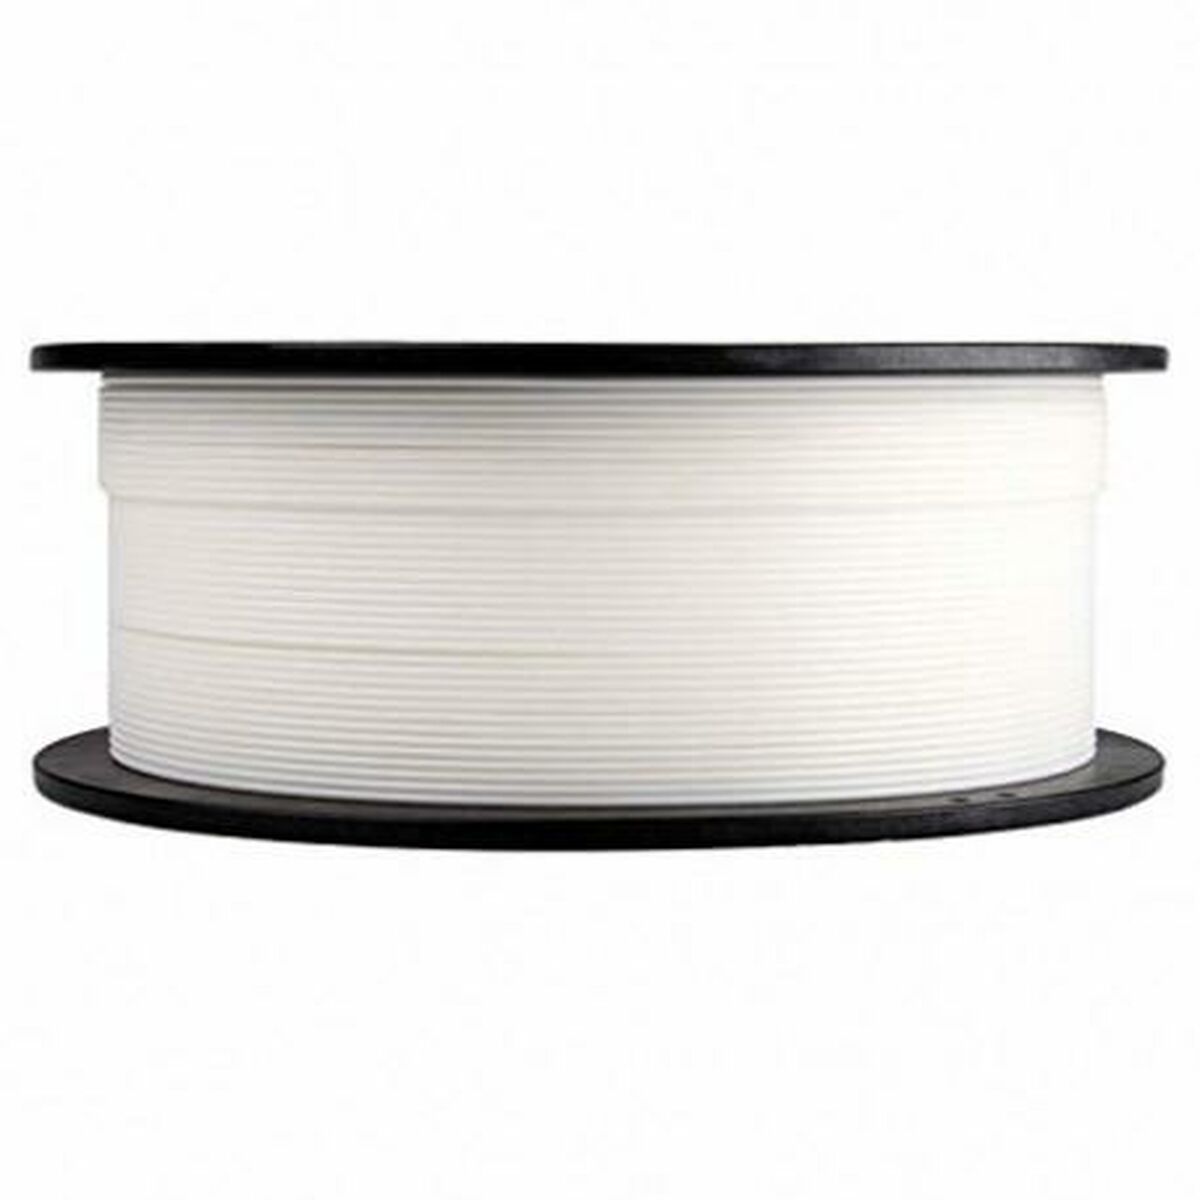 Filament Reel CoLiDo Grey 1,75 mm